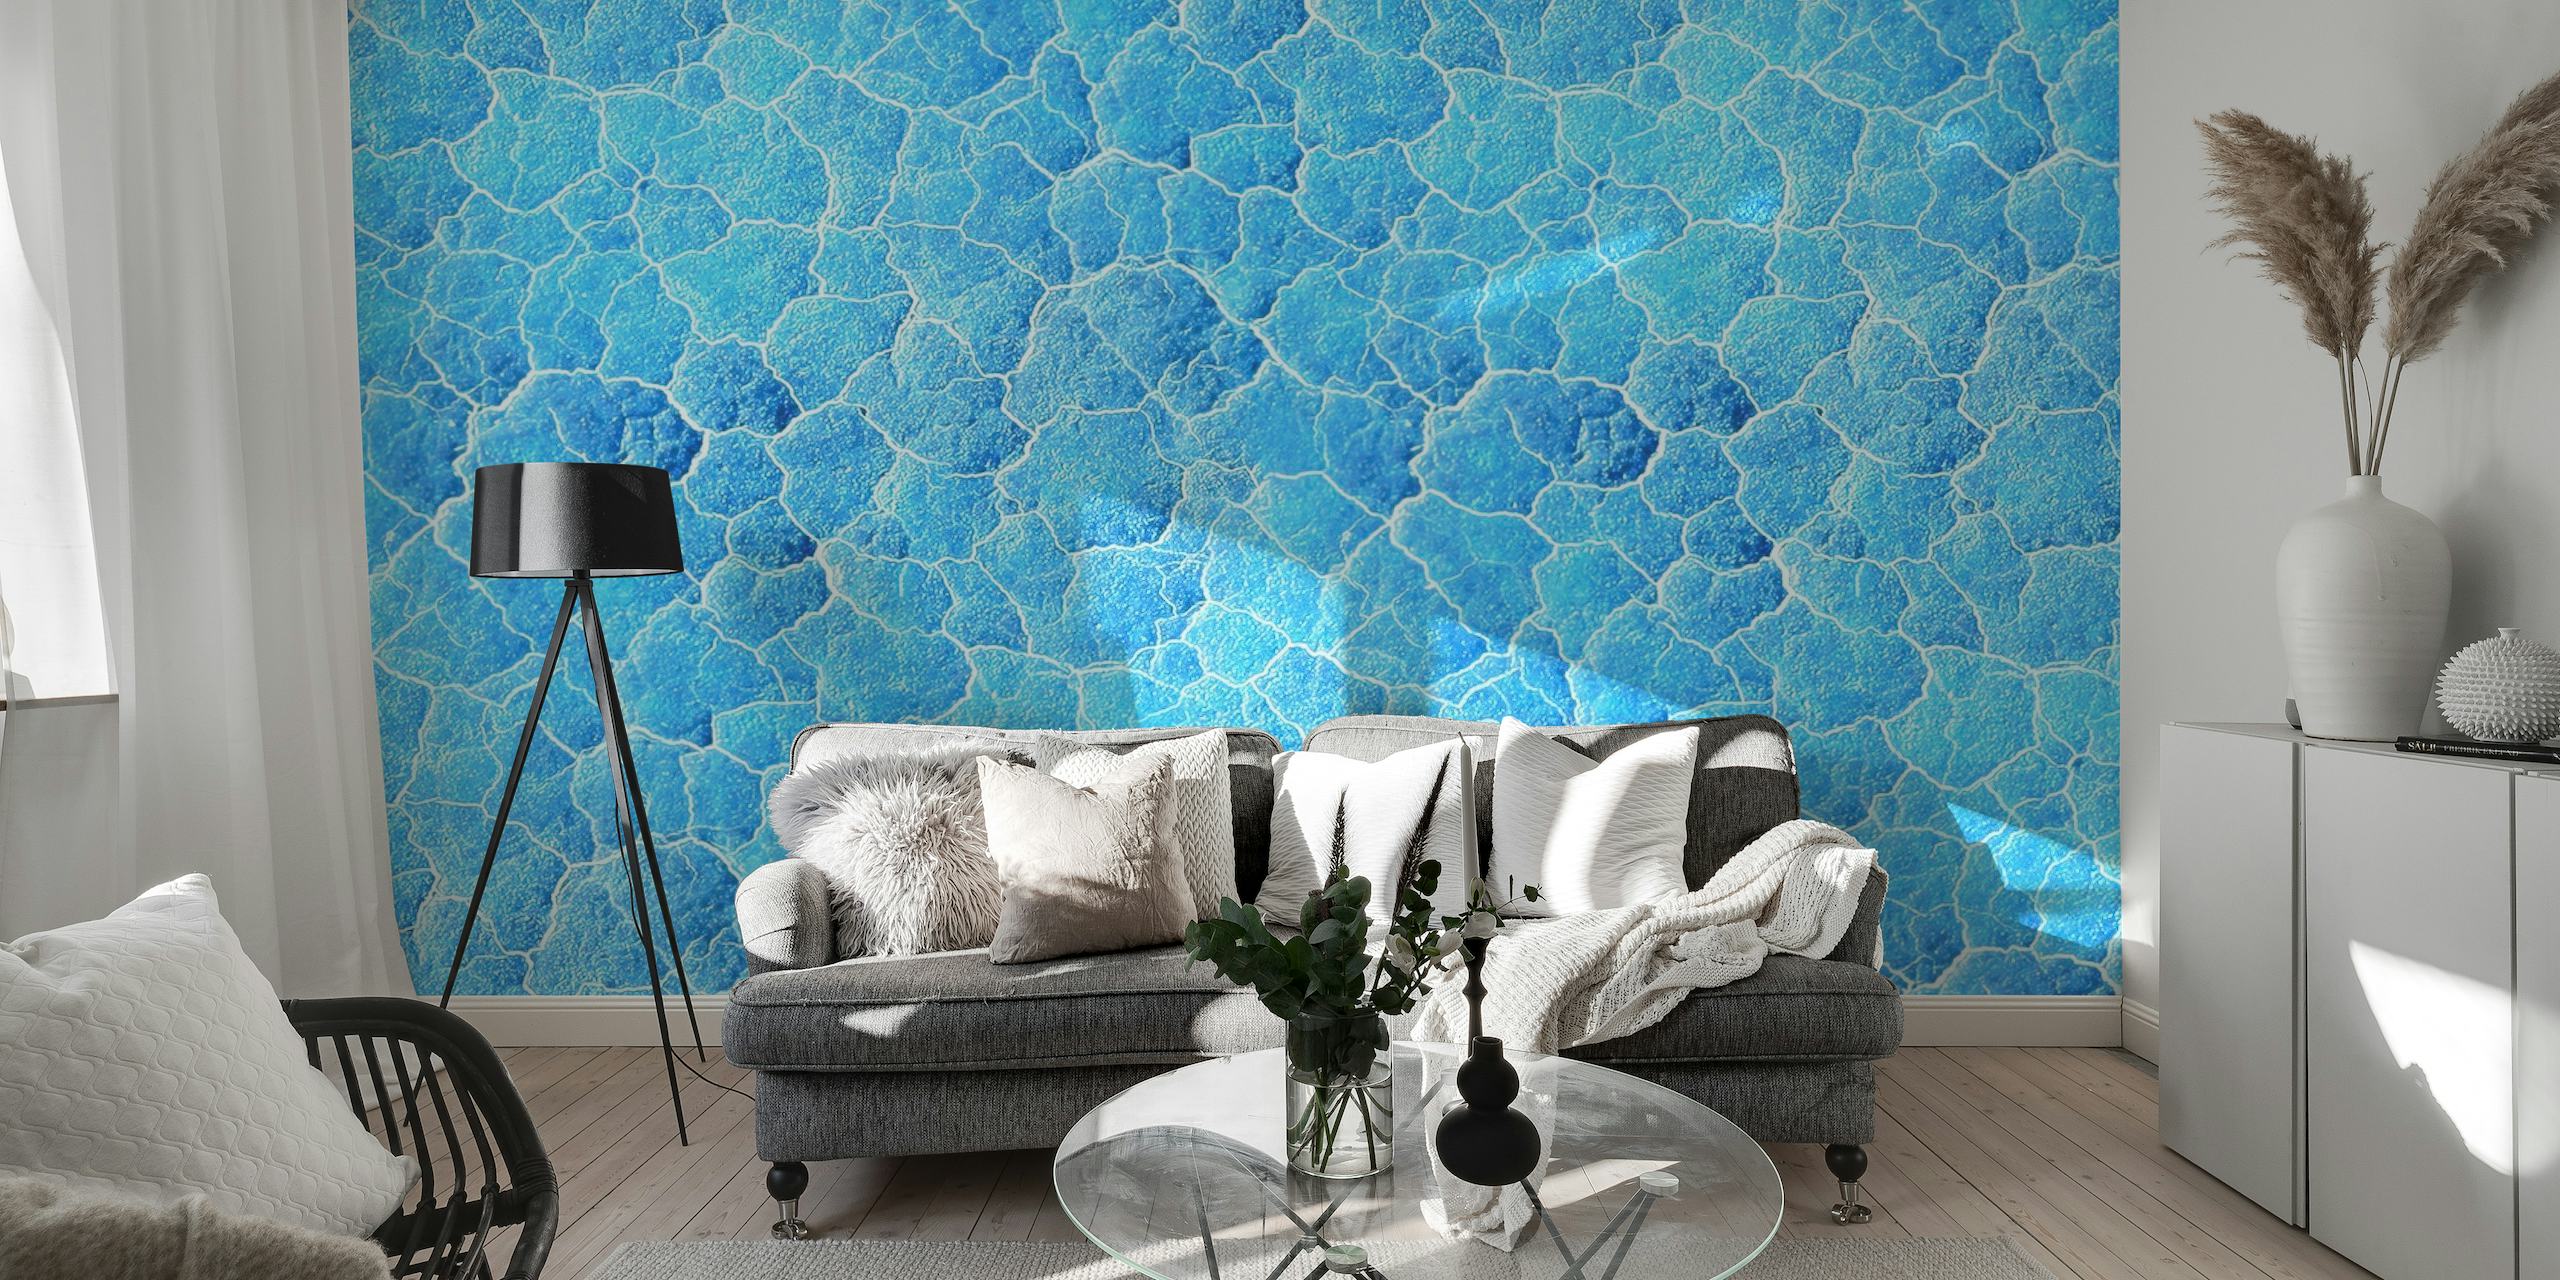 Soothing underwater blue wall mural depicting the peaceful ocean floor